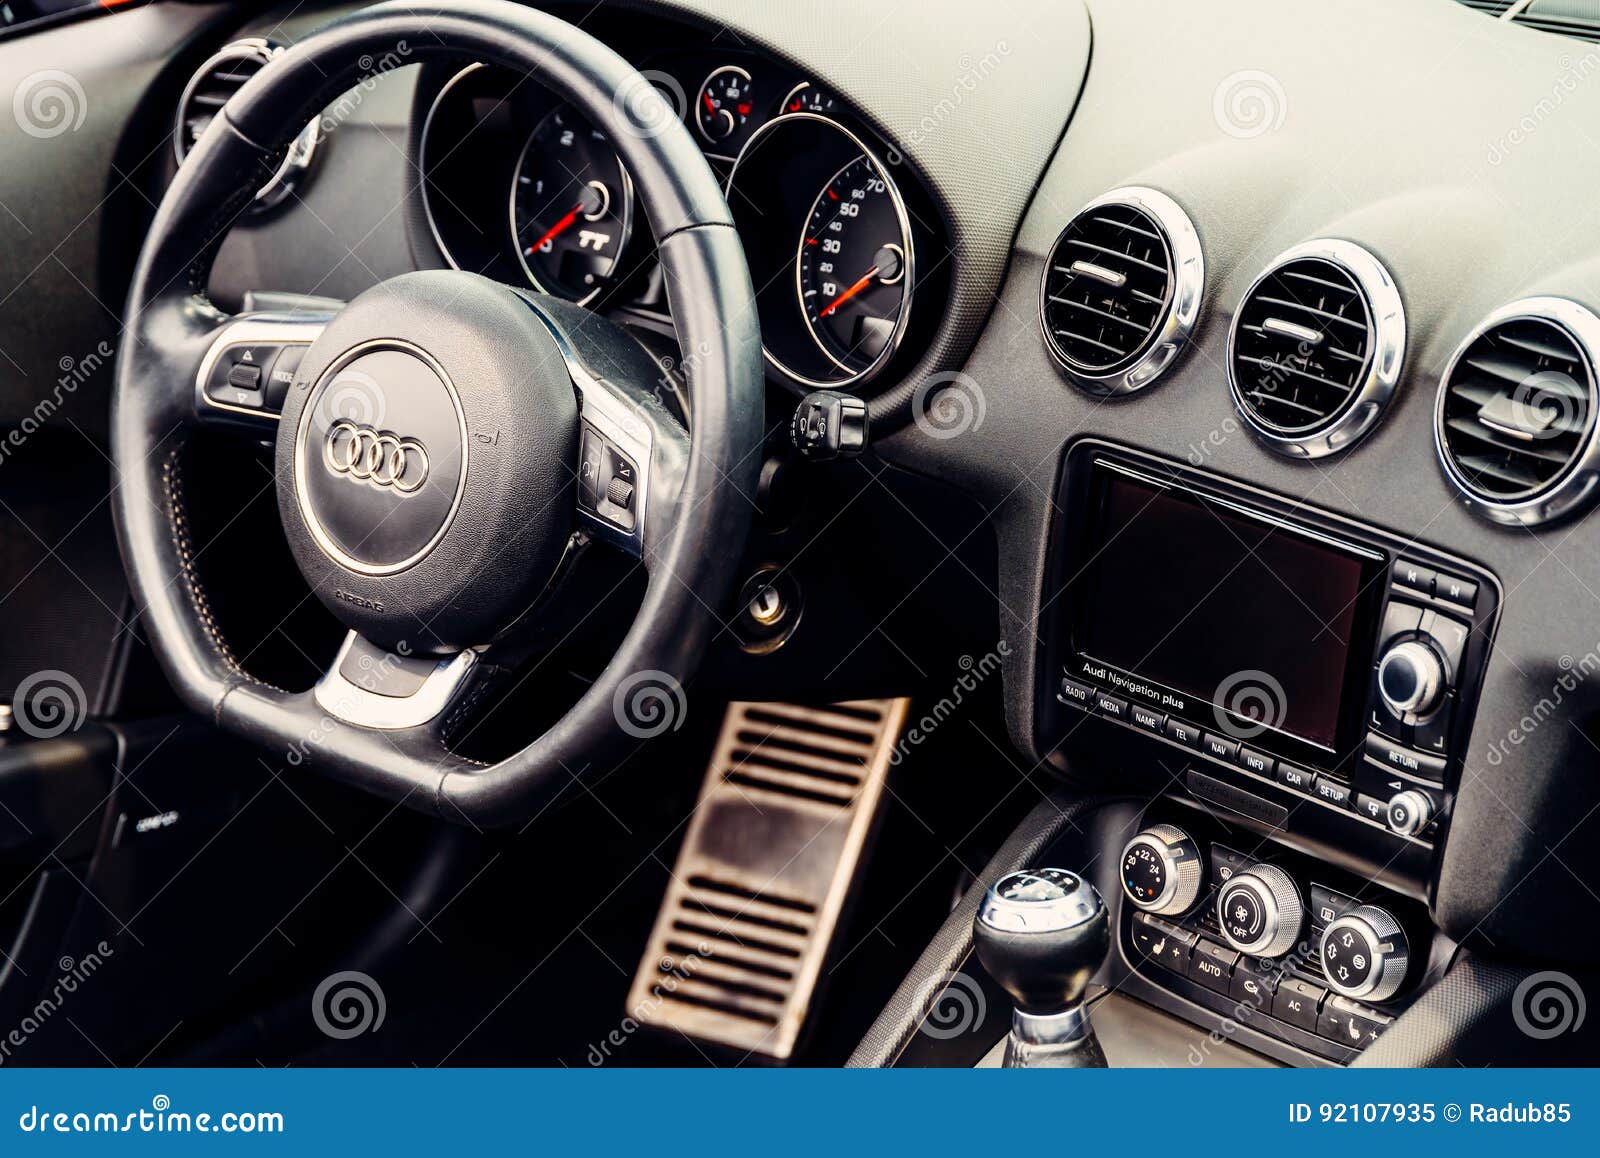 Audi Luxury Car Interior Redaktionelles Bild Bild Von